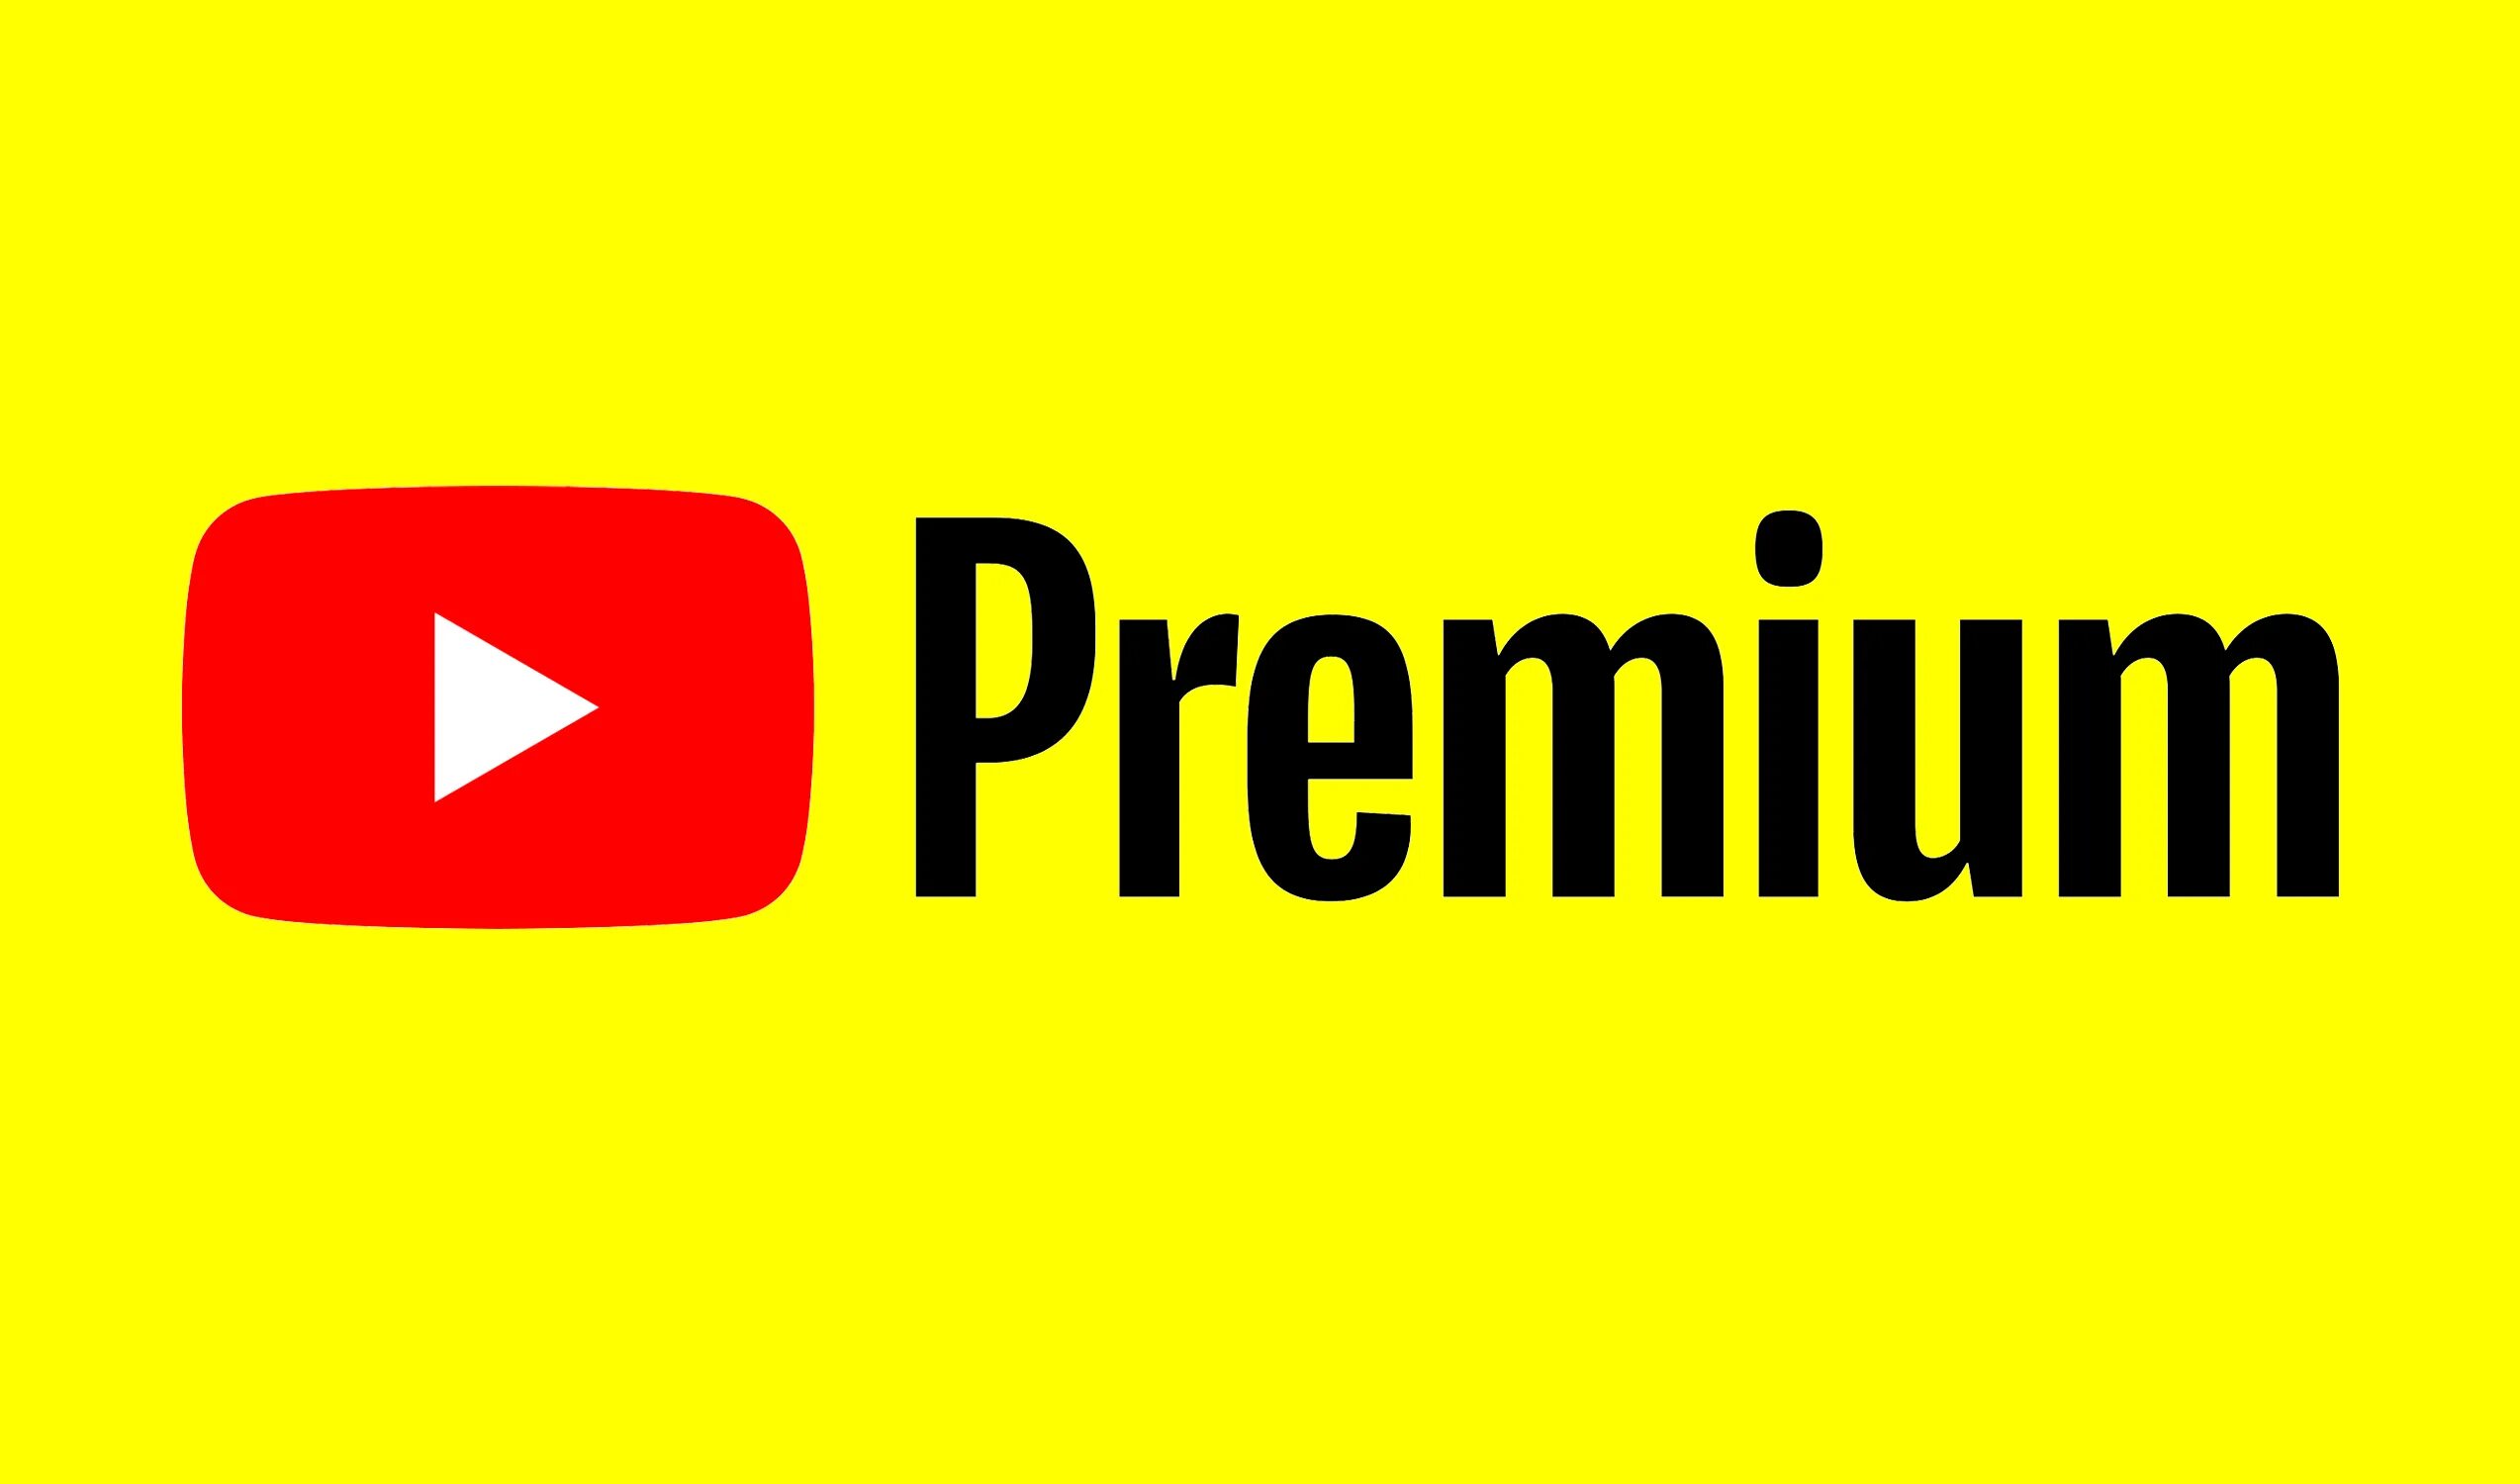 Ютуб мьюзик цена. Youtube Premium. Ютуб премиум. Логотип ютуб. Ютуб премиум логотип.